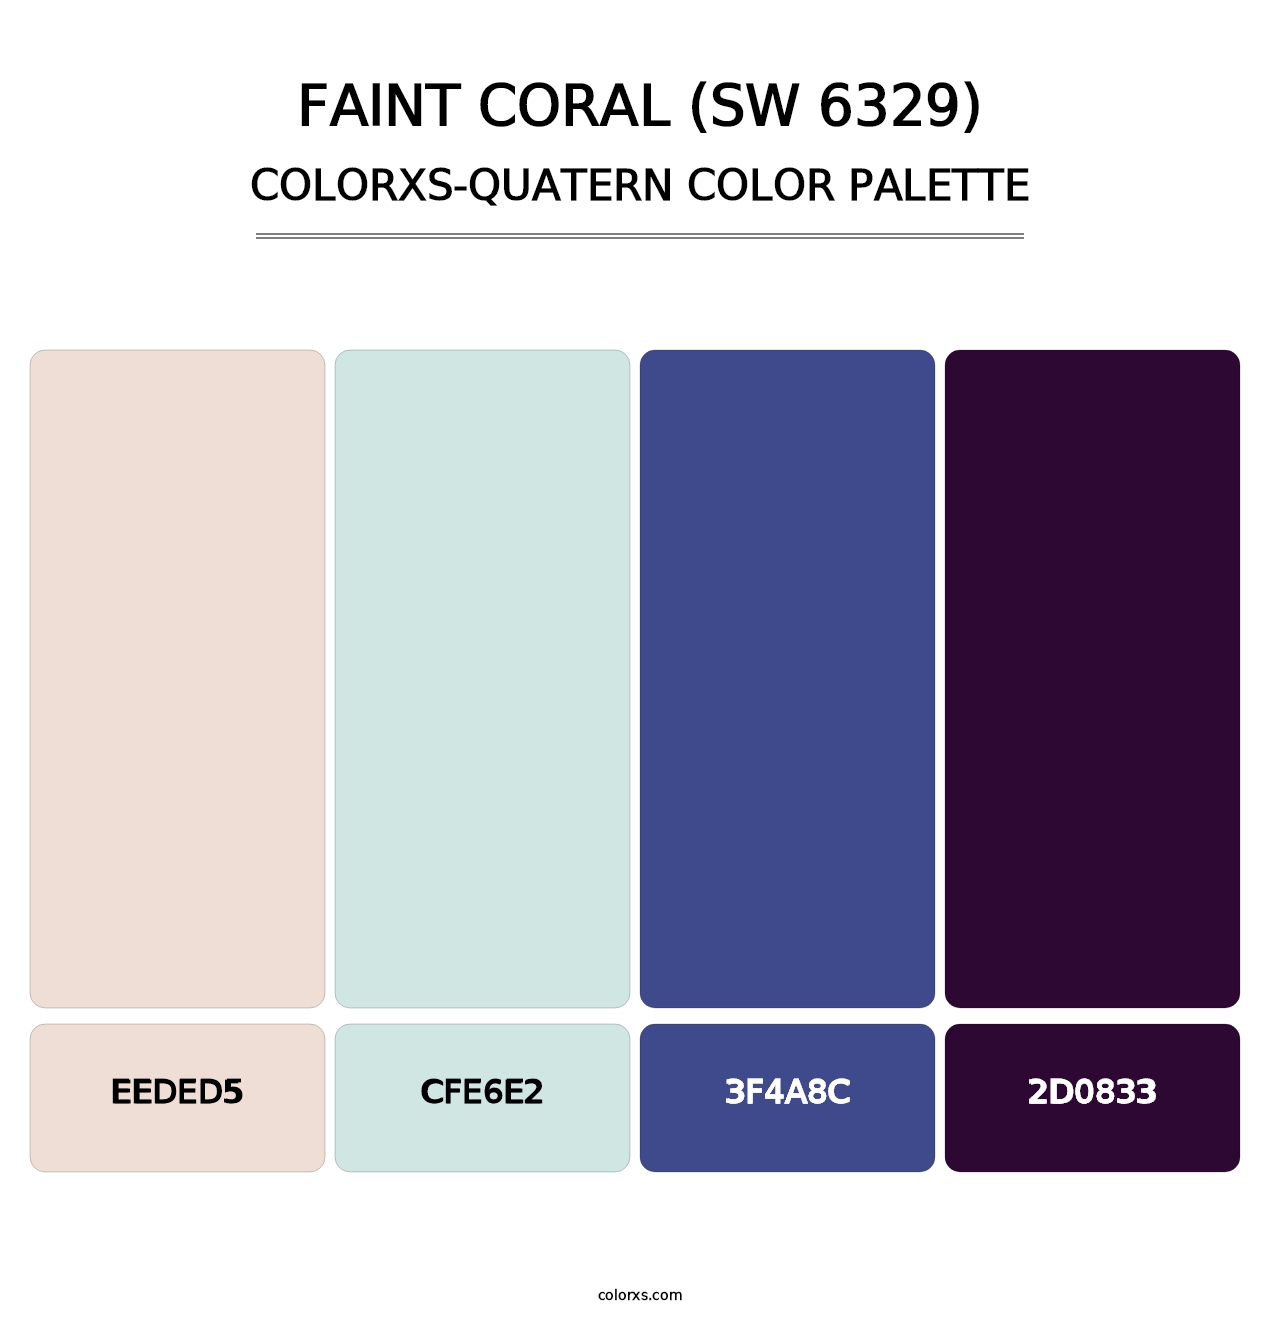 Faint Coral (SW 6329) - Colorxs Quatern Palette